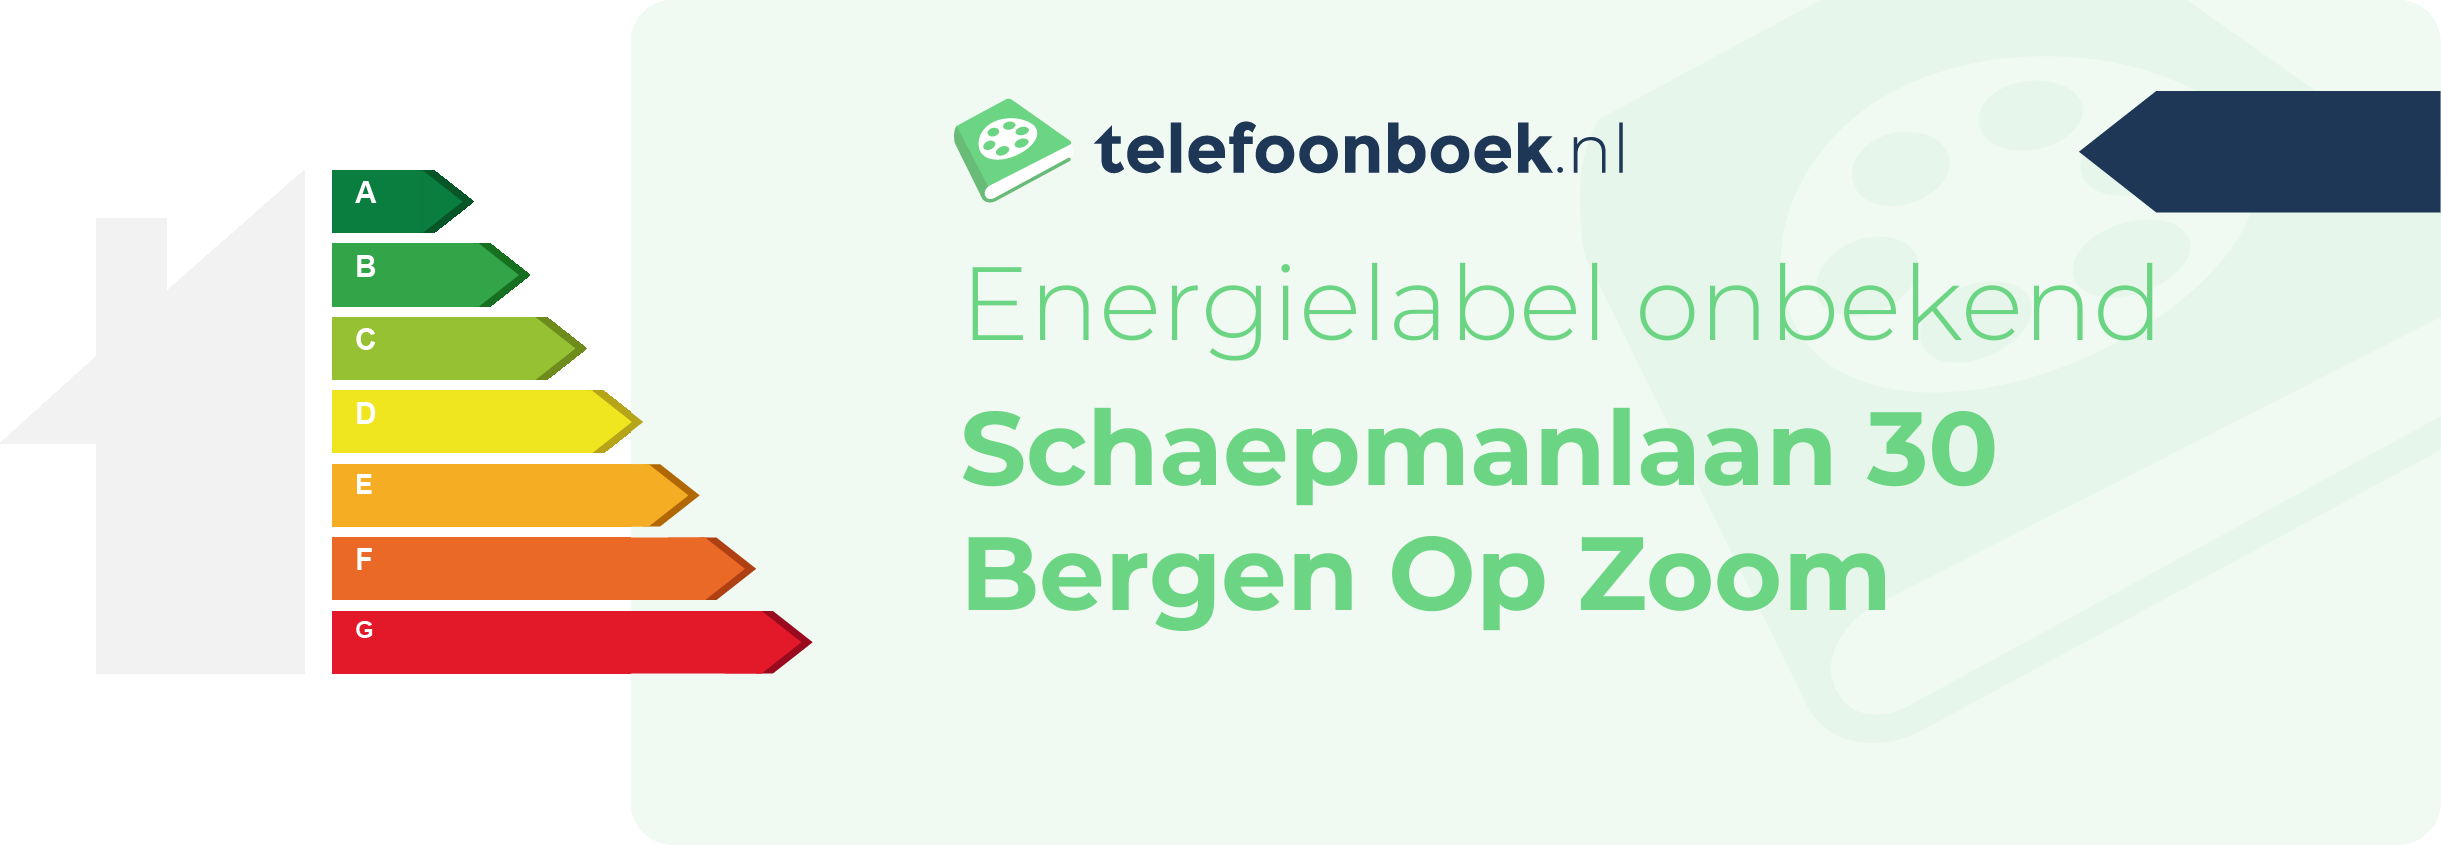 Energielabel Schaepmanlaan 30 Bergen Op Zoom